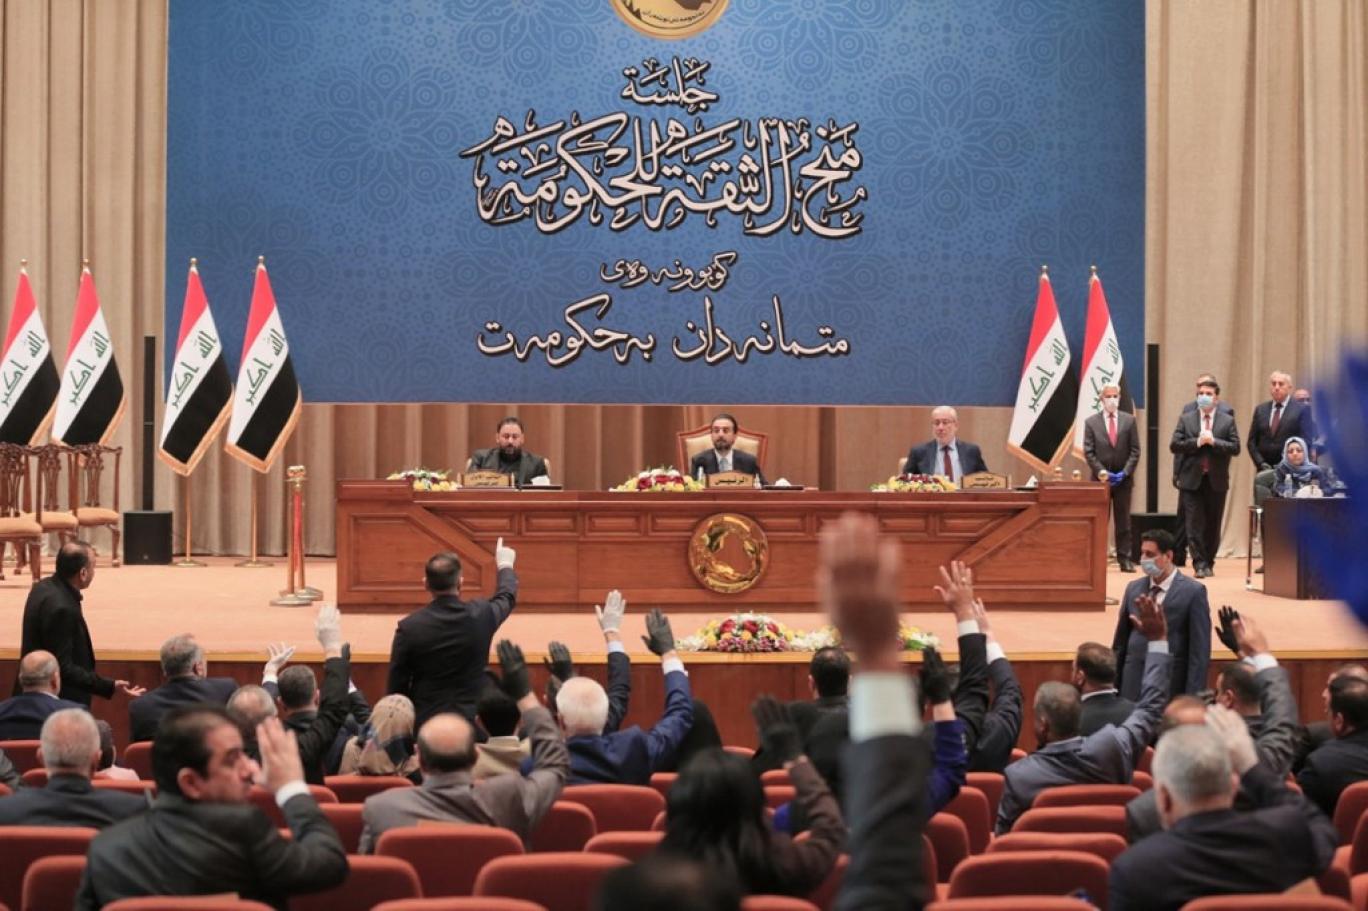 صادقون تدعو البرلمان لتحرك حازم بشأن الوجود الأمريكي والتركي في العراق